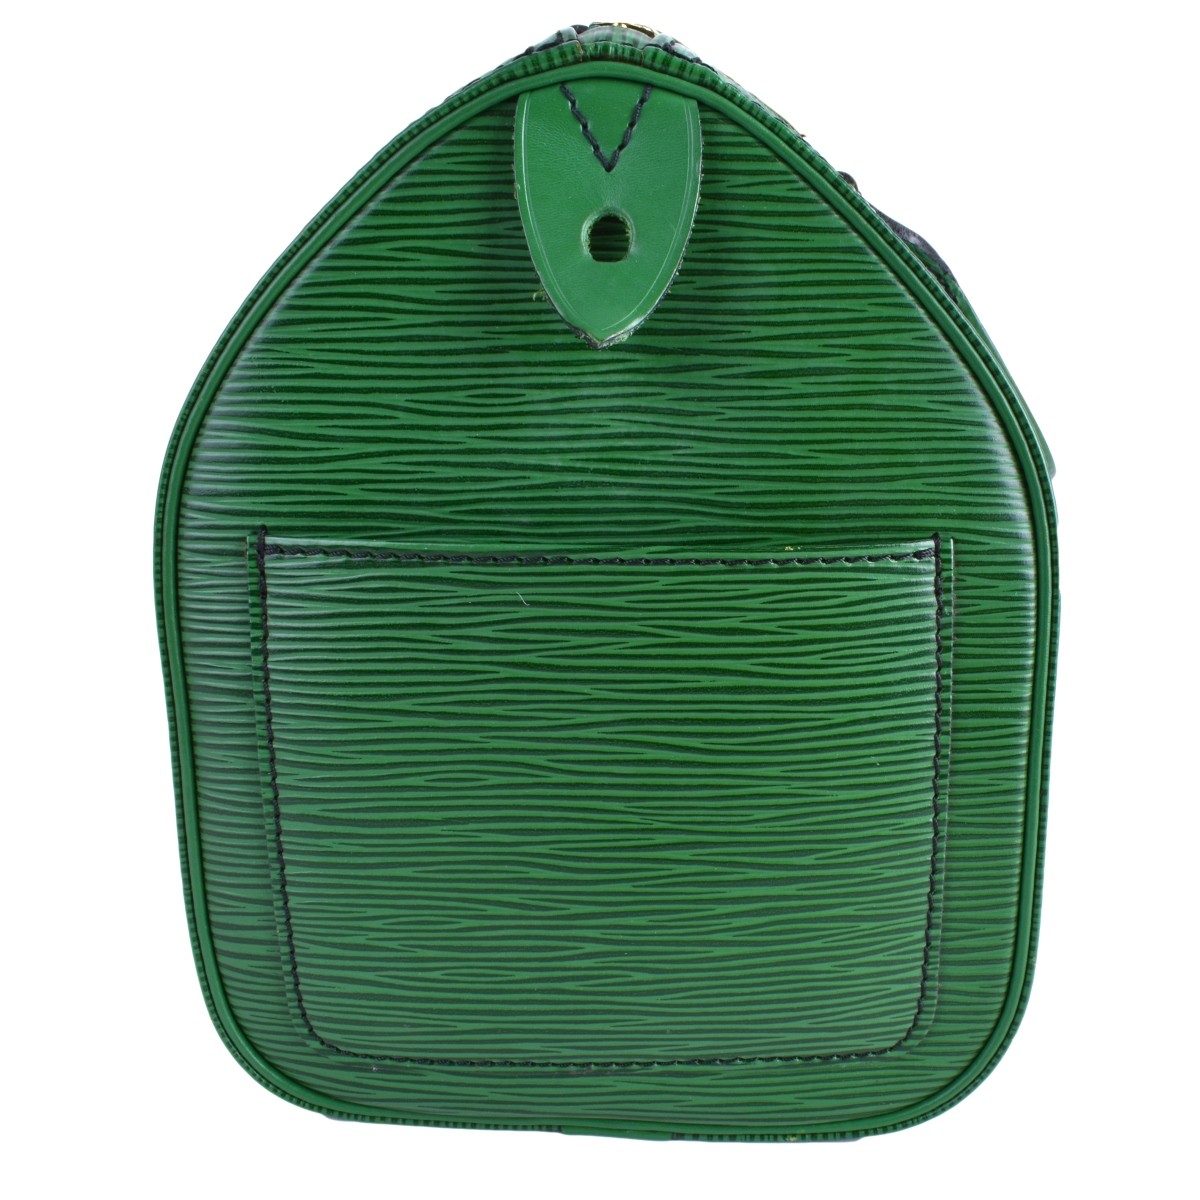 Louis Vuitton Green Epi Leather Speedy 25 Bag